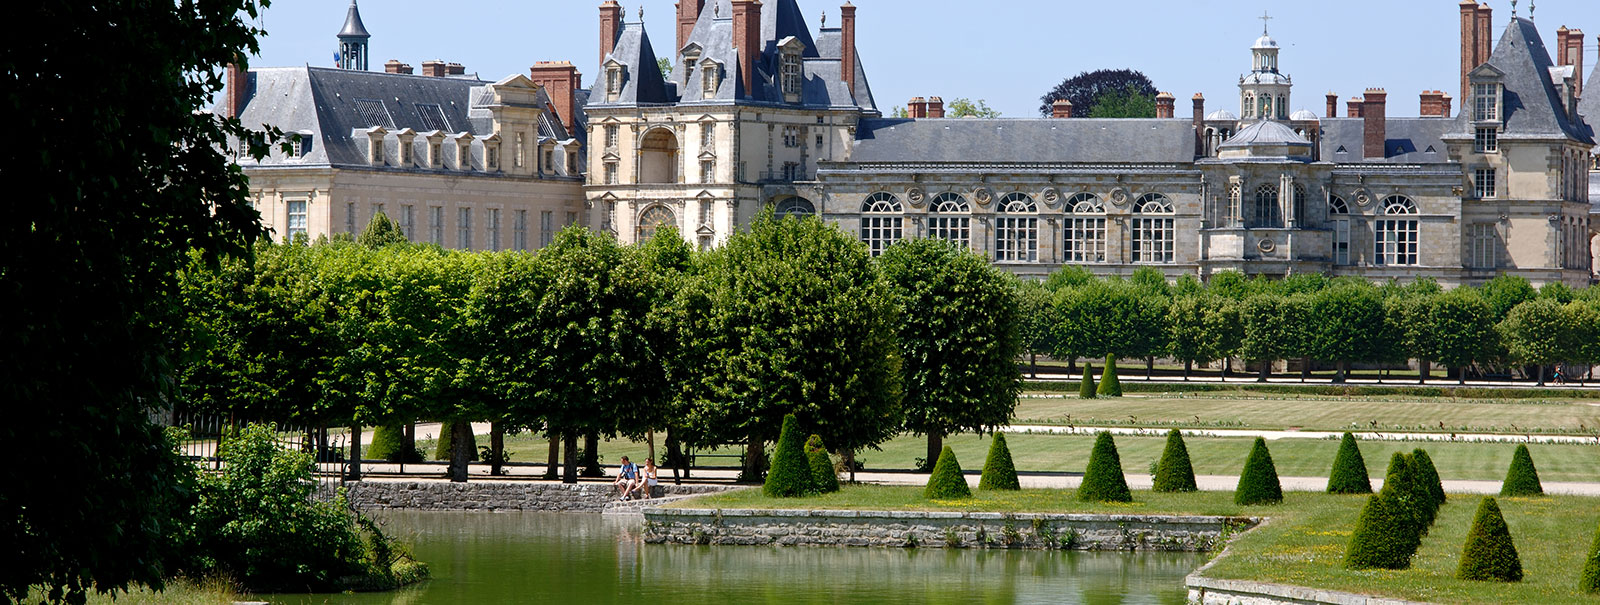 Summer at the Château de Fontainebleau